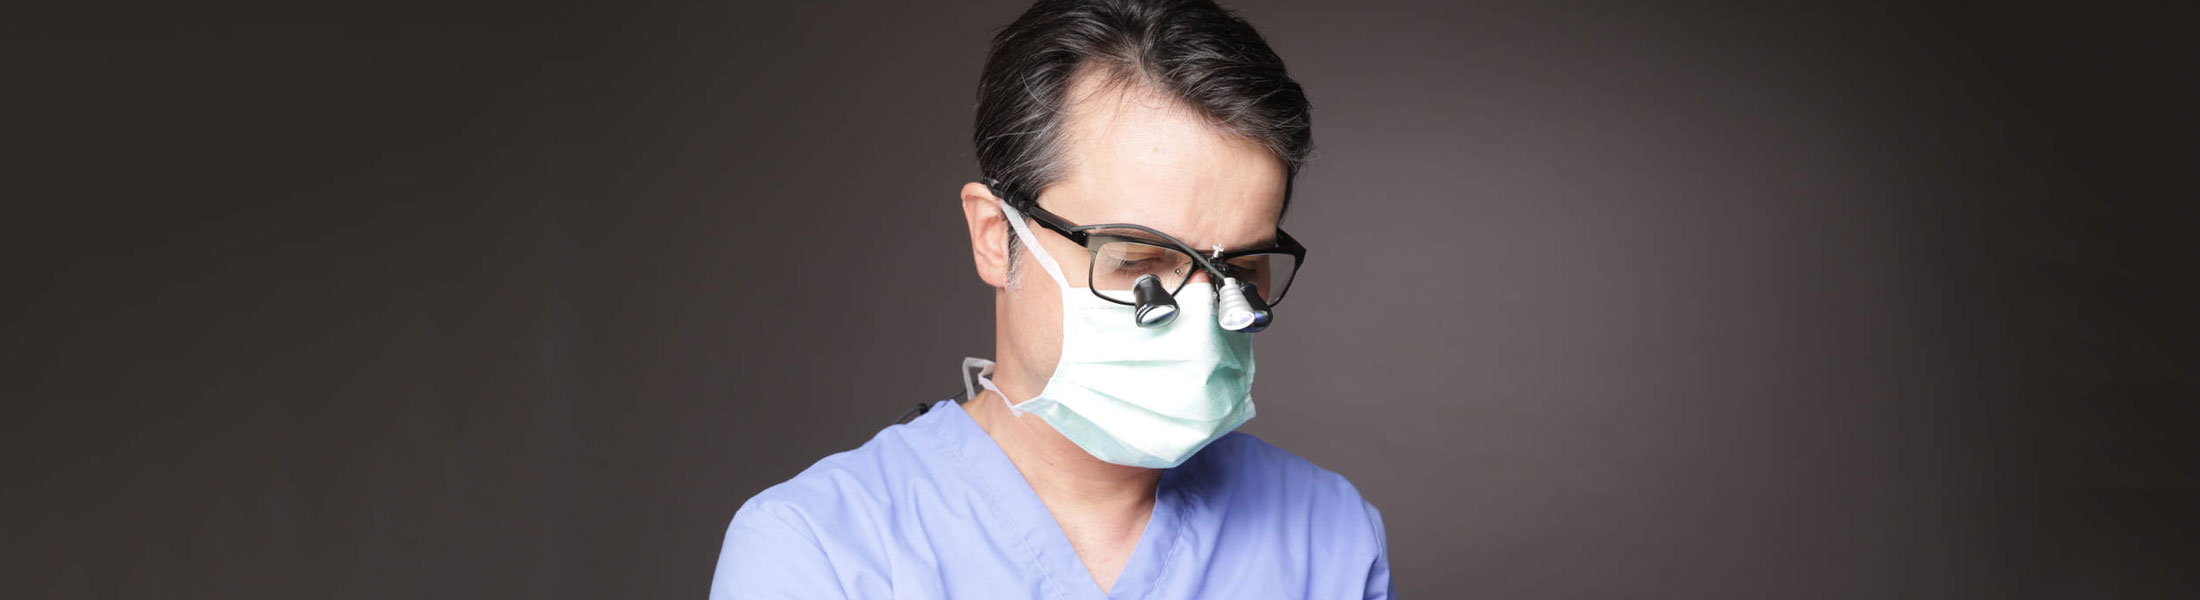 Dr. Marcus Klein - Zahnimplantate in Köln